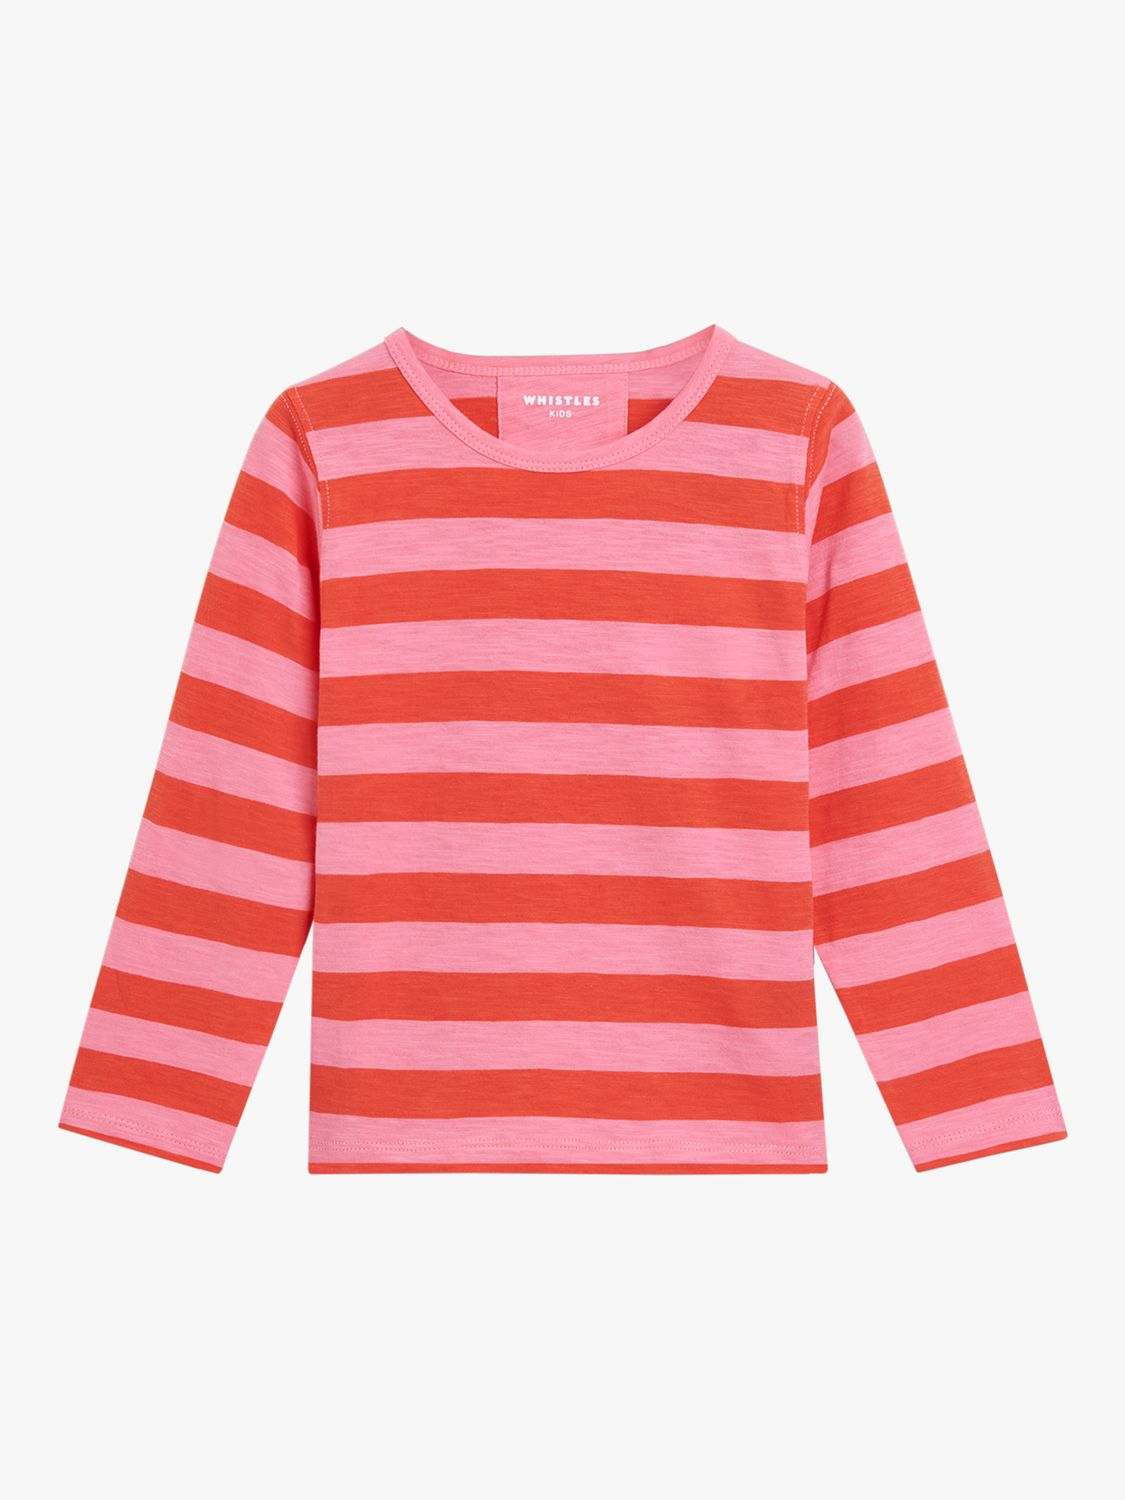 Whistles Kids' Cotton Stripe Long Sleeve Top, Pink at John Lewis & Partners